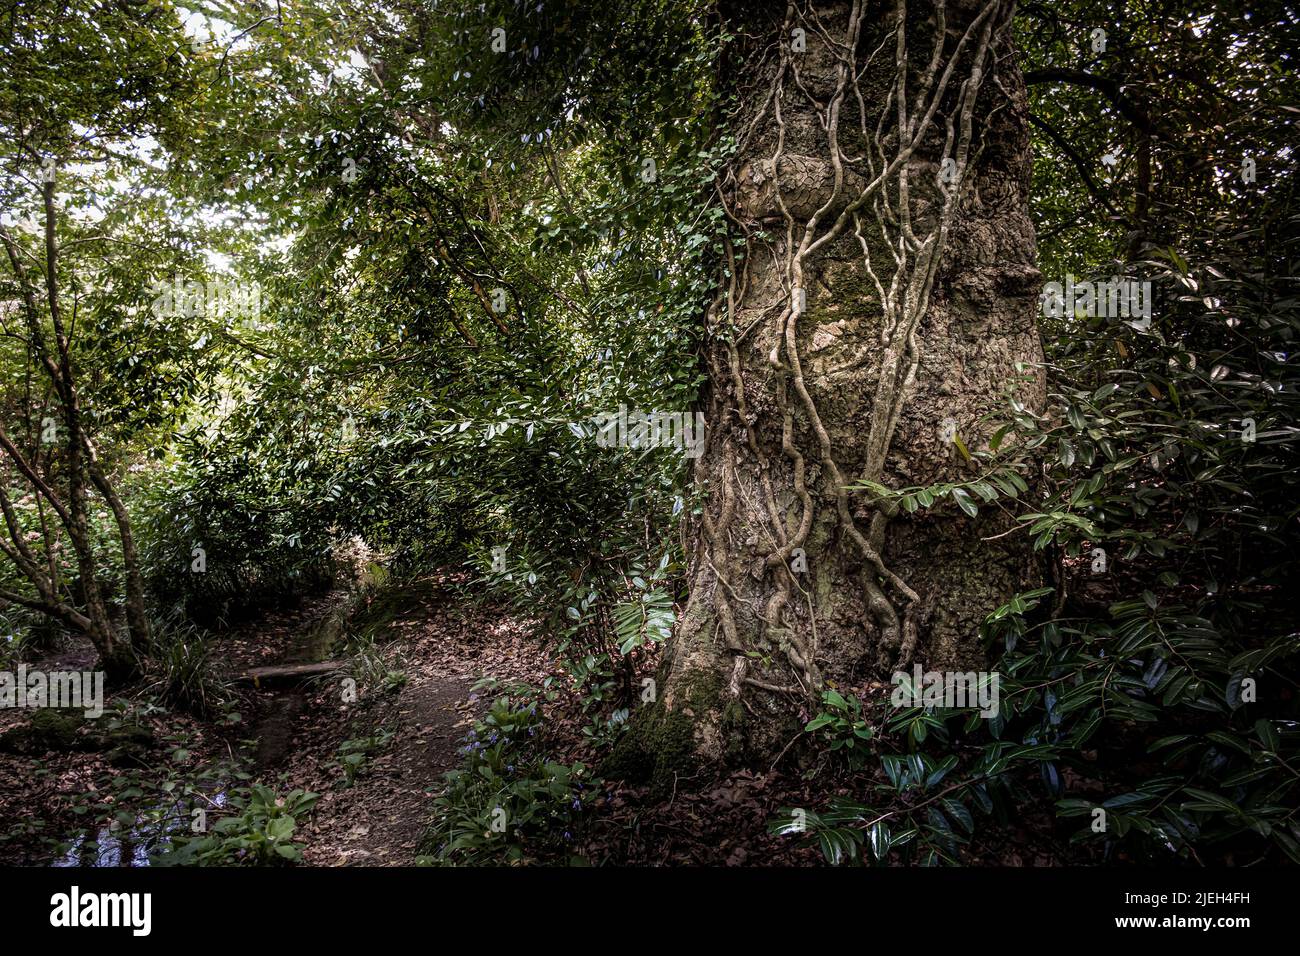 Le jardin sauvage subtropical Penjjick à Cornwall. Penjerrick Garden est reconnu comme le véritable jardin de la jungle de Cornmuls en Angleterre au Royaume-Uni. Banque D'Images